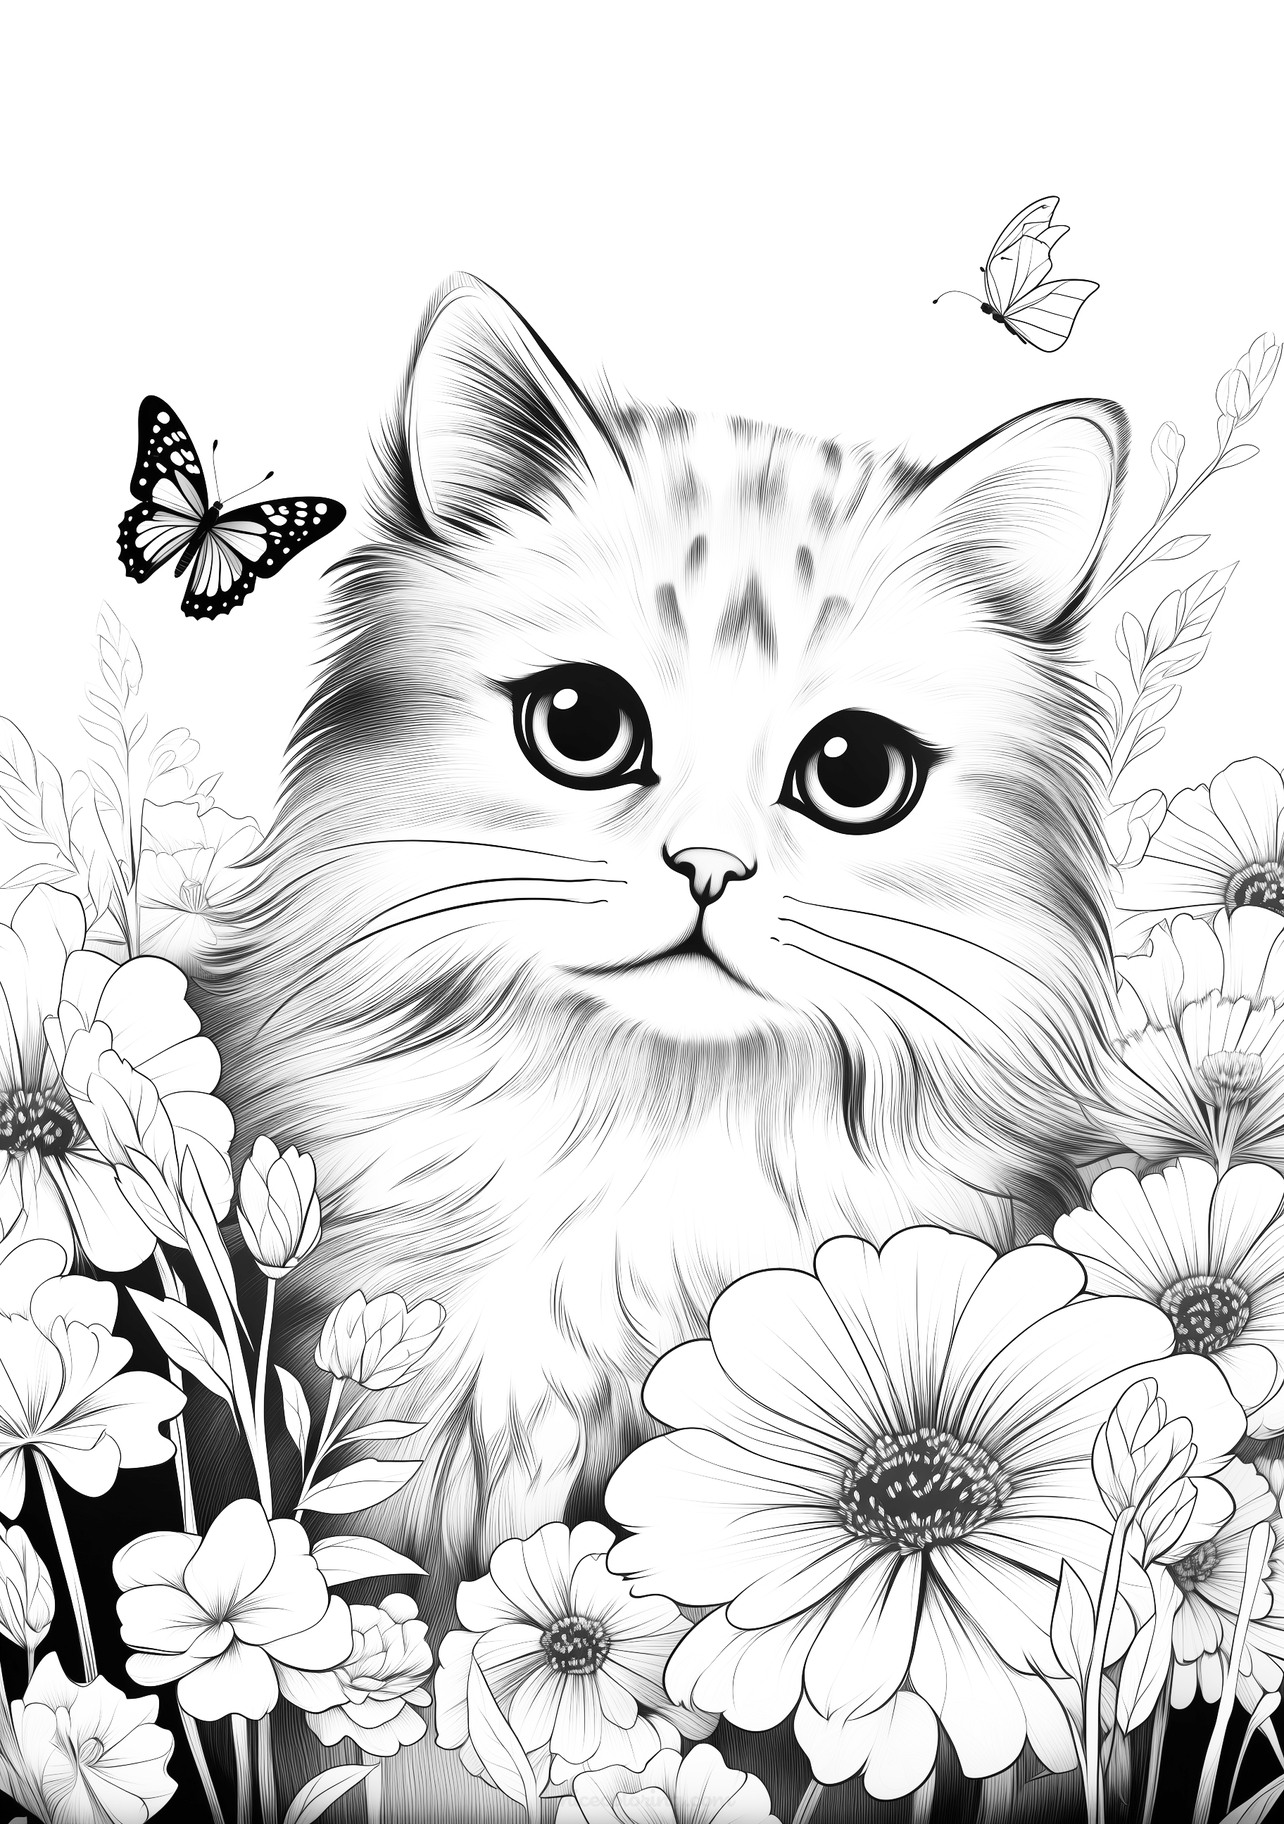 포근한 고양이와 나비가 있는 꽃밭의 색칠